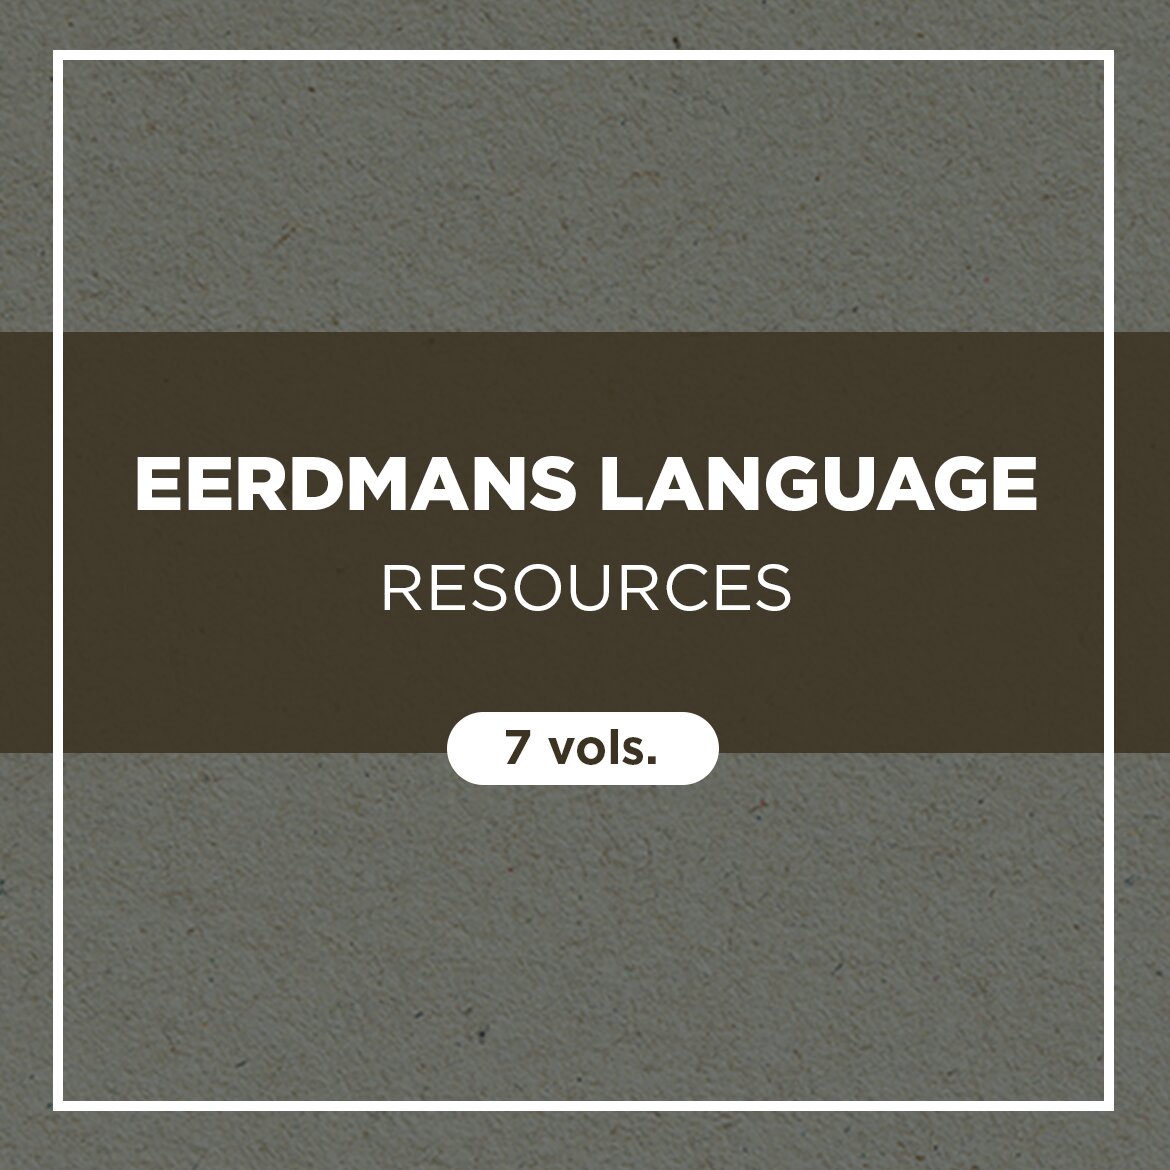 Eerdmans Language Resources (7 vols.)